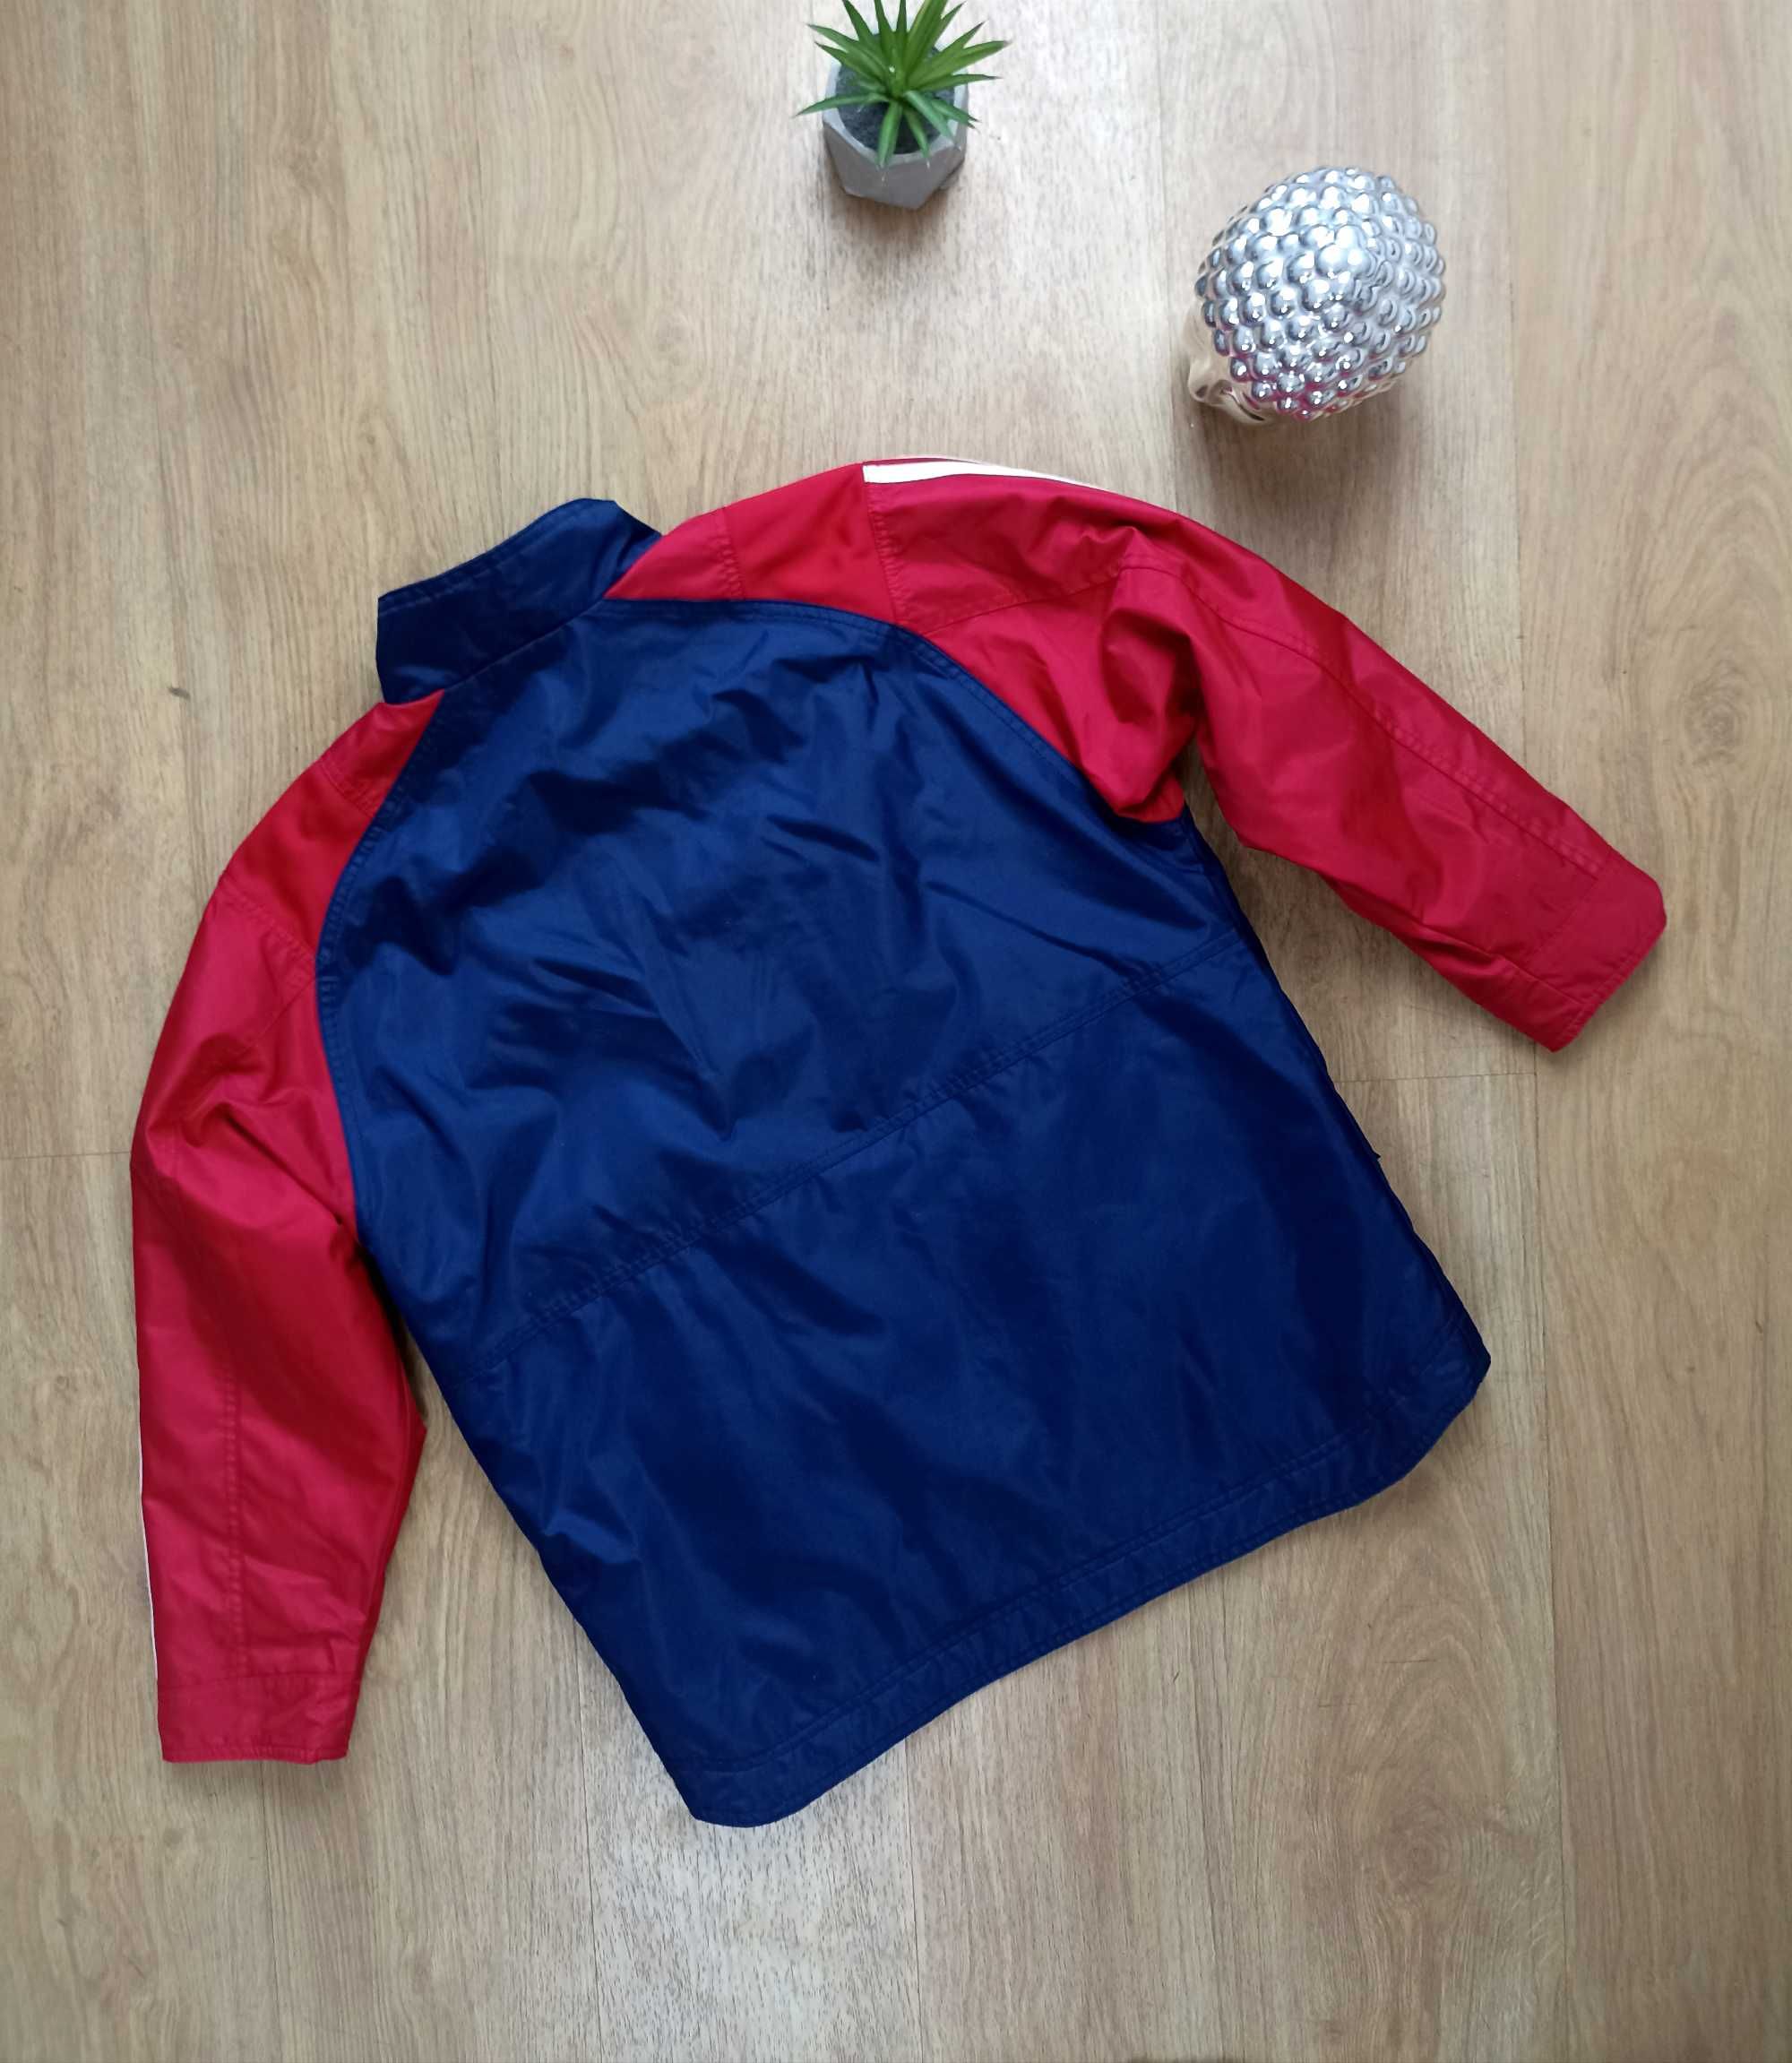 Adidas granatowa kurtka z czerwonymi rękawami 152cm 12lat